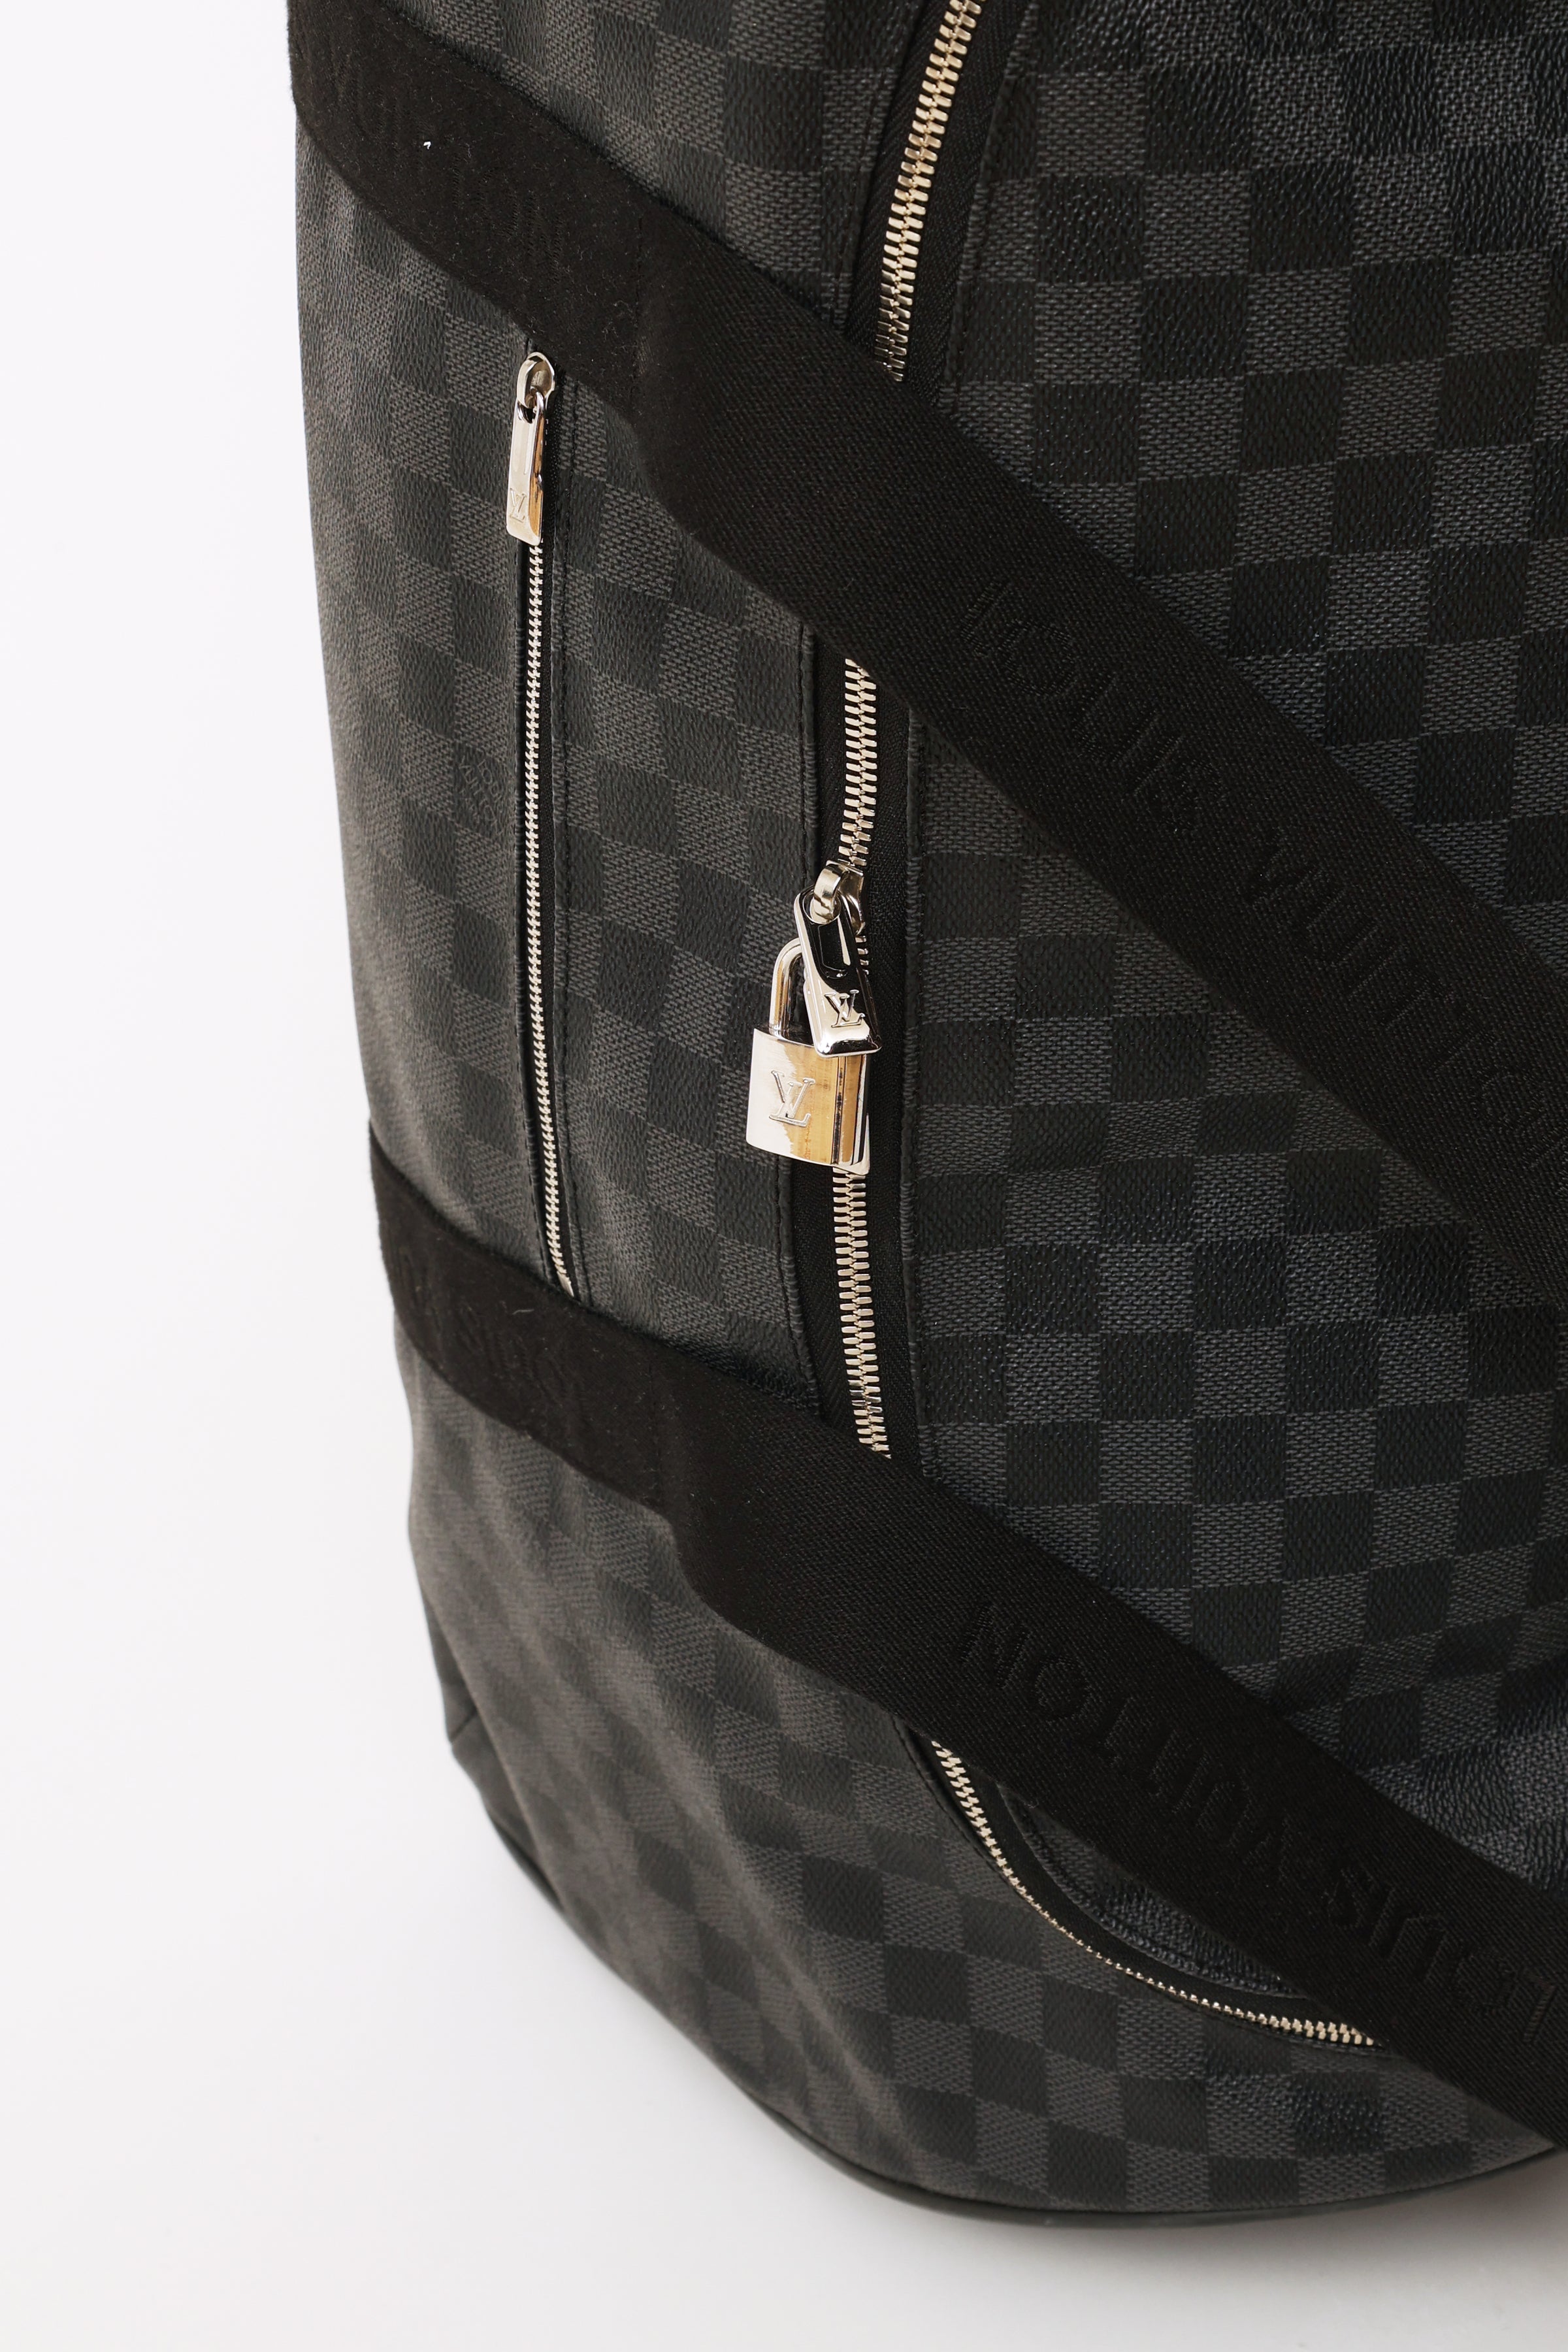 Louis Vuitton Damier Graphite Neo Kendall - Black Weekenders, Bags -  LOU796828